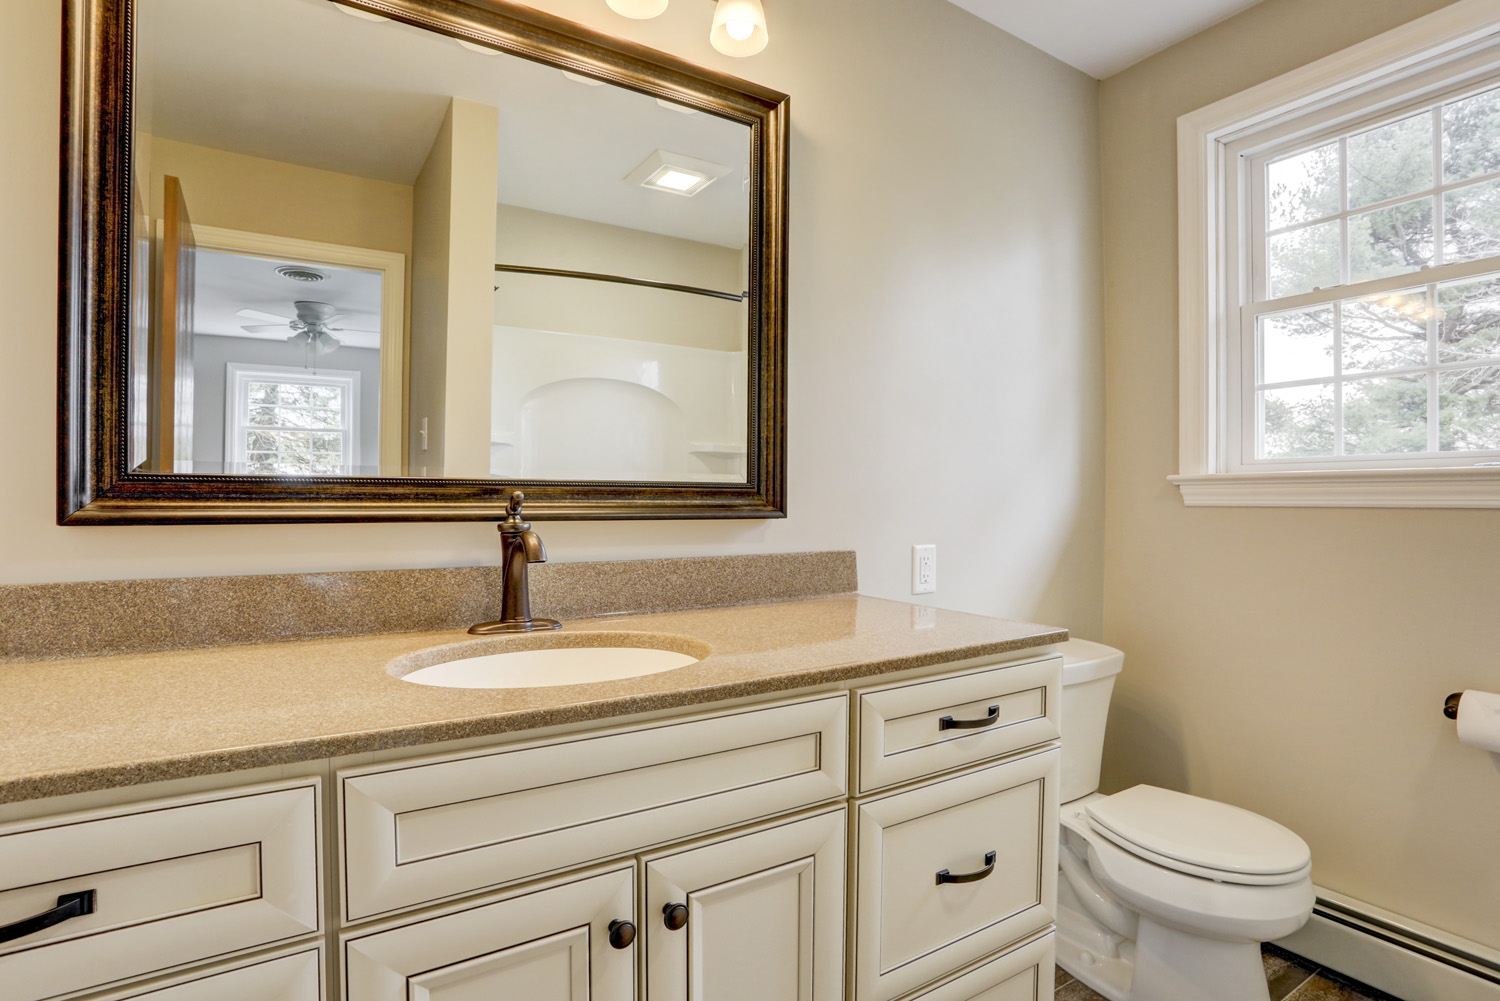 Wide vanity in Millersvile PA bathroom remodel